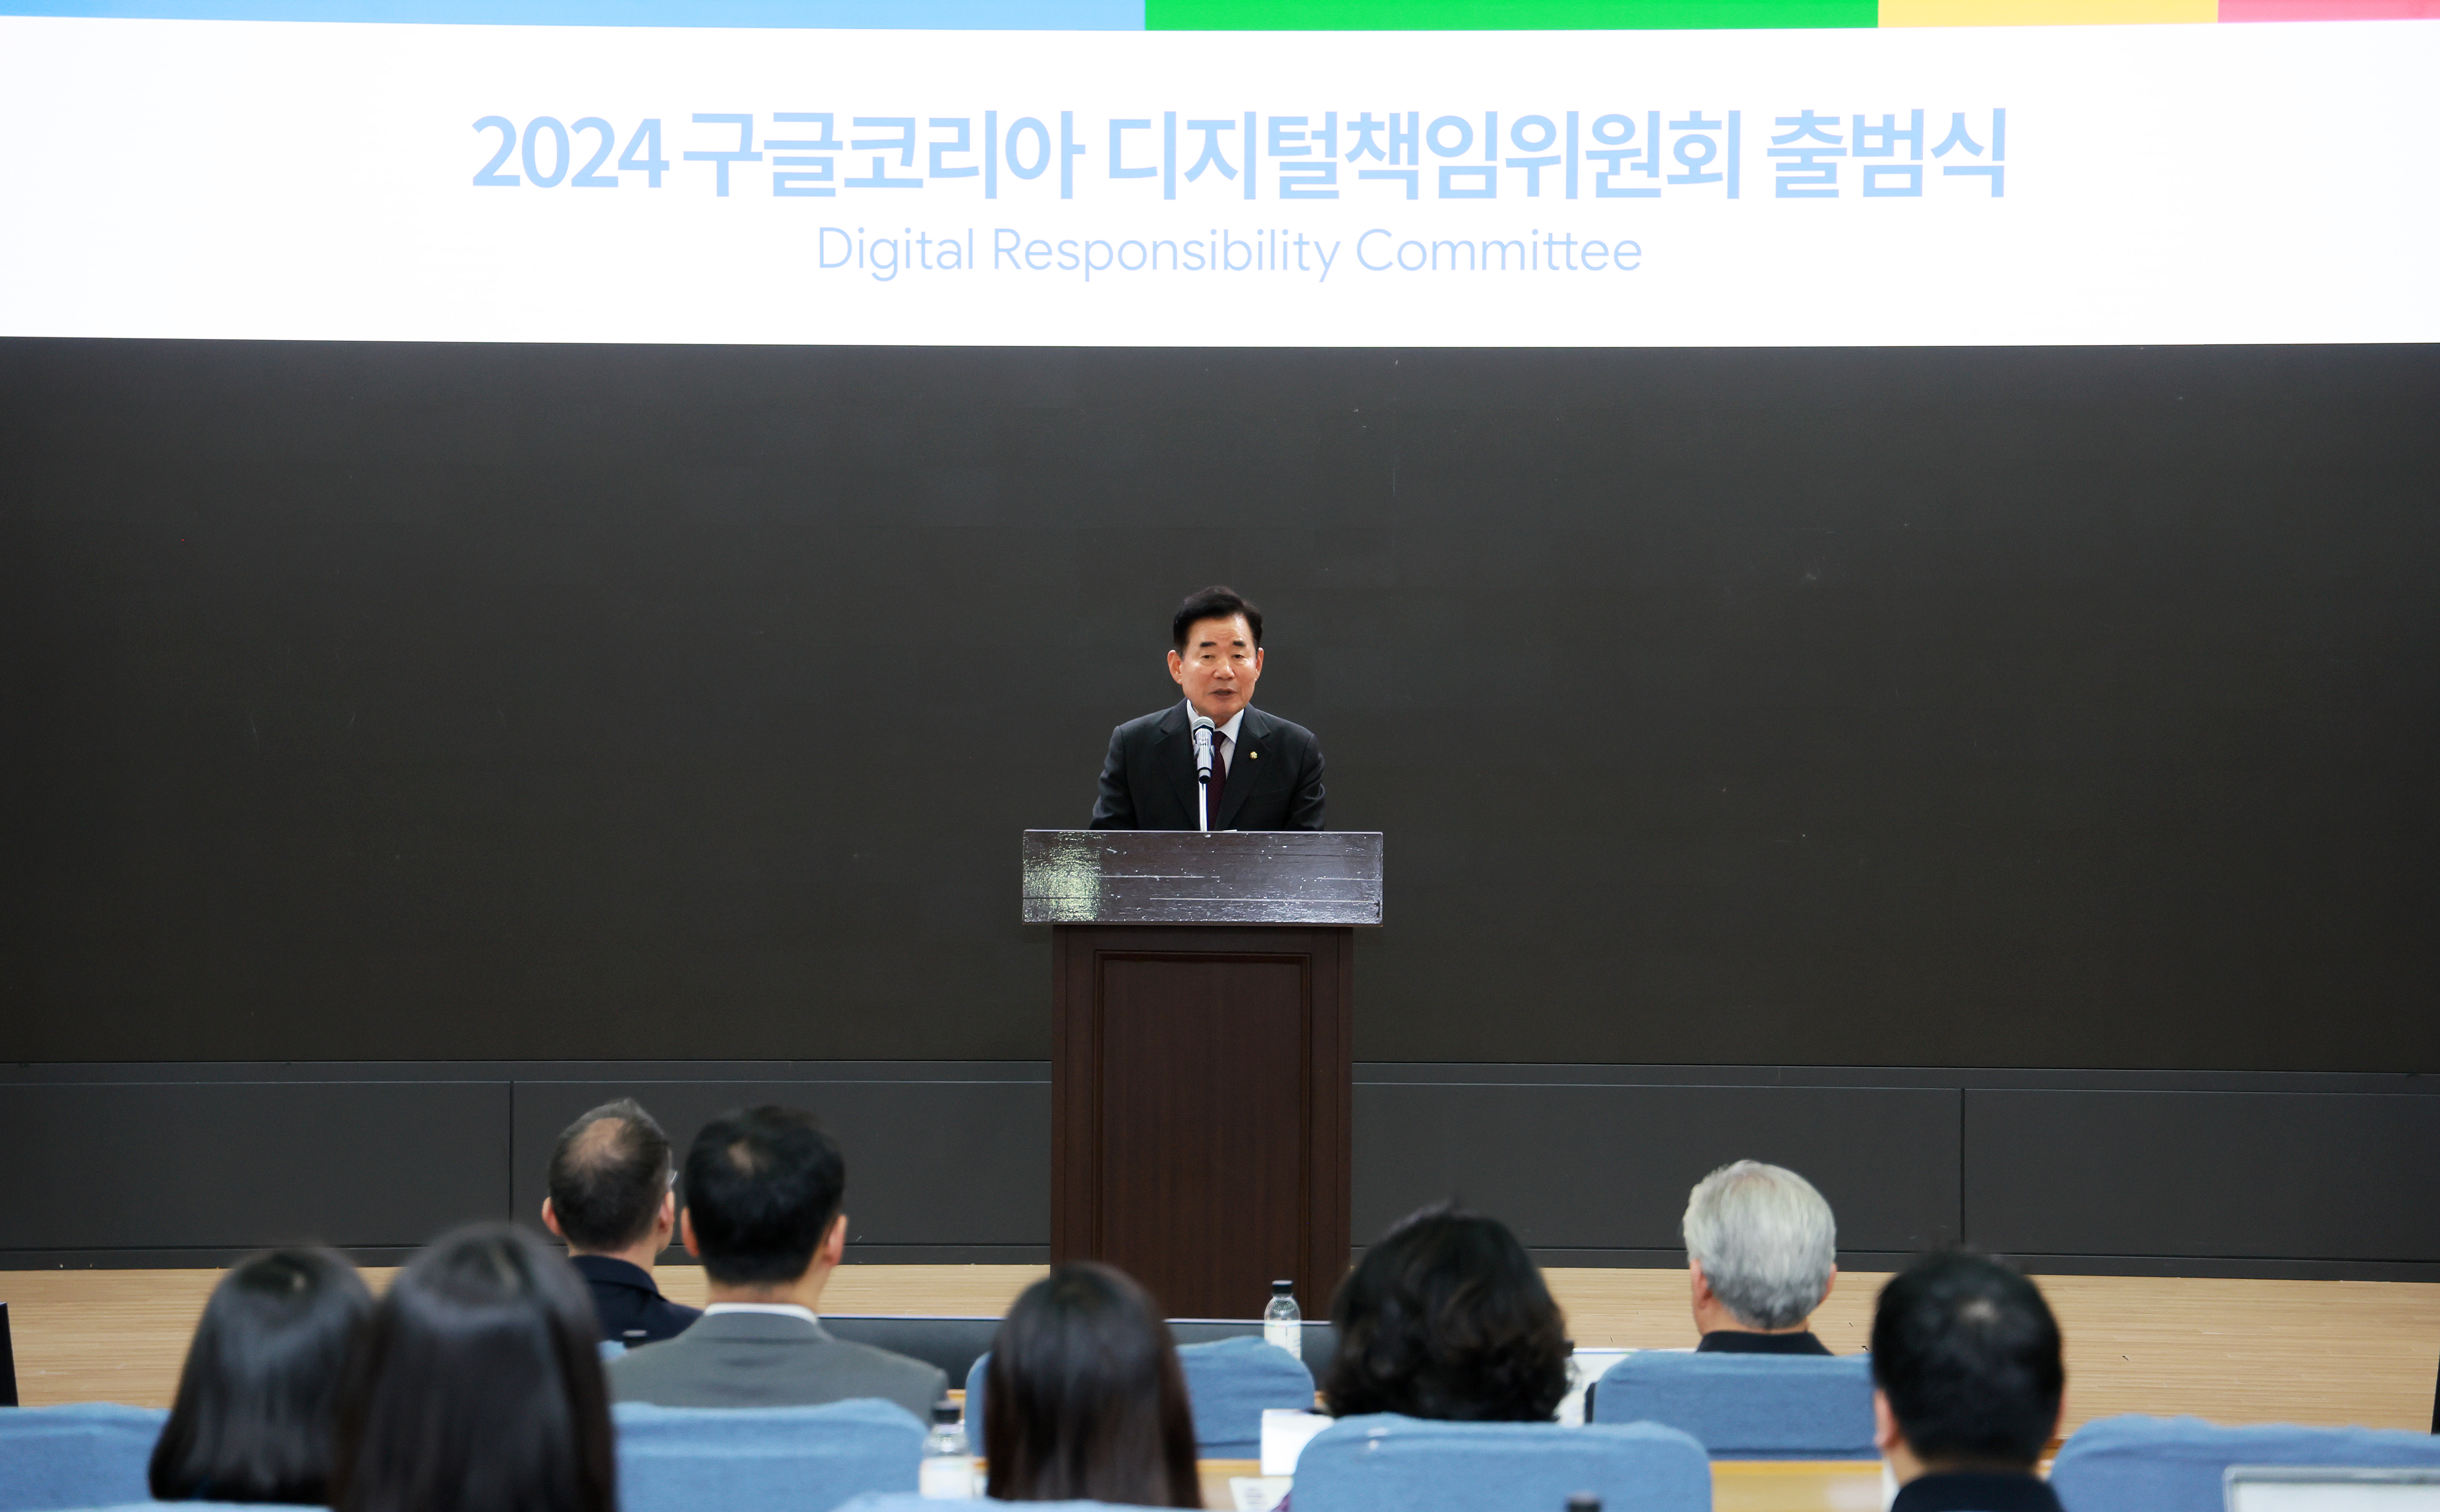 김진표 의장, 구글코리아 디지털책임위원회 출범식 참석 3.jpg